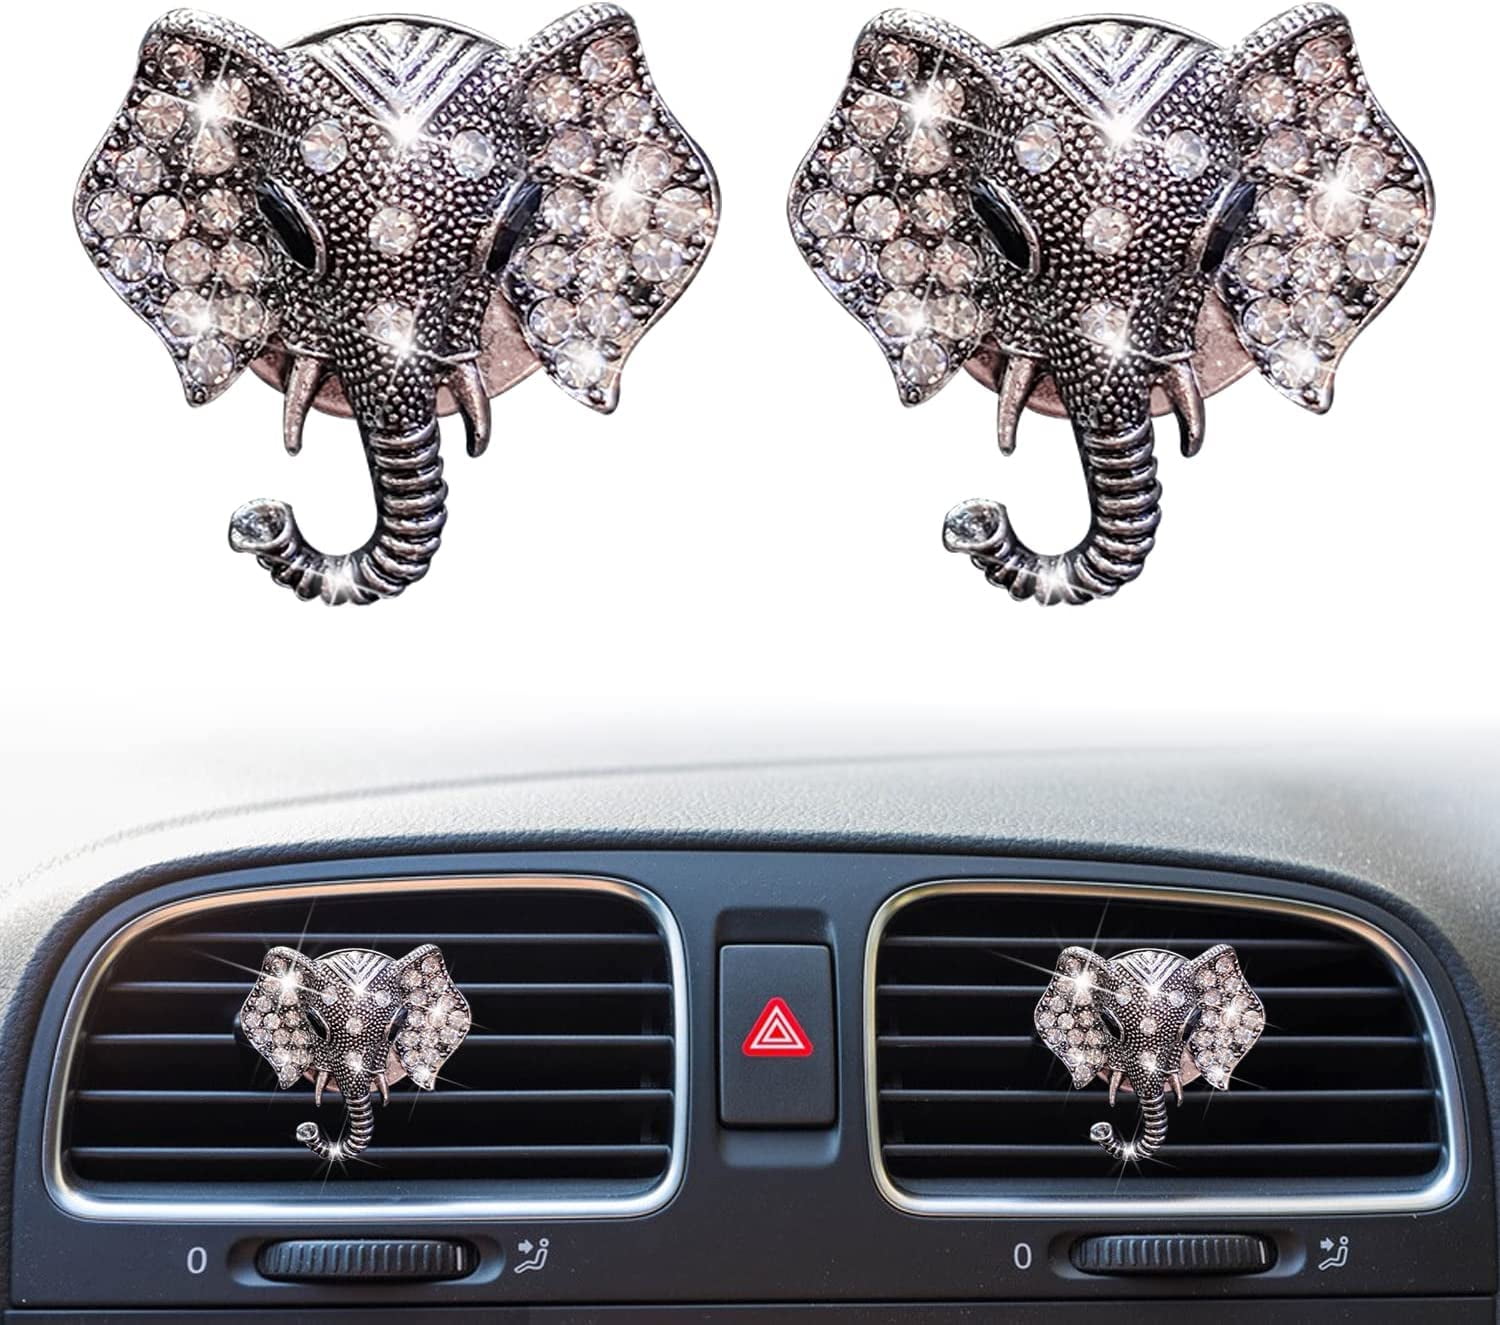 Clips de désodorisants de voiture pour femmes, mignon double papillon  diamant strass désodorisant Clip de ventilation